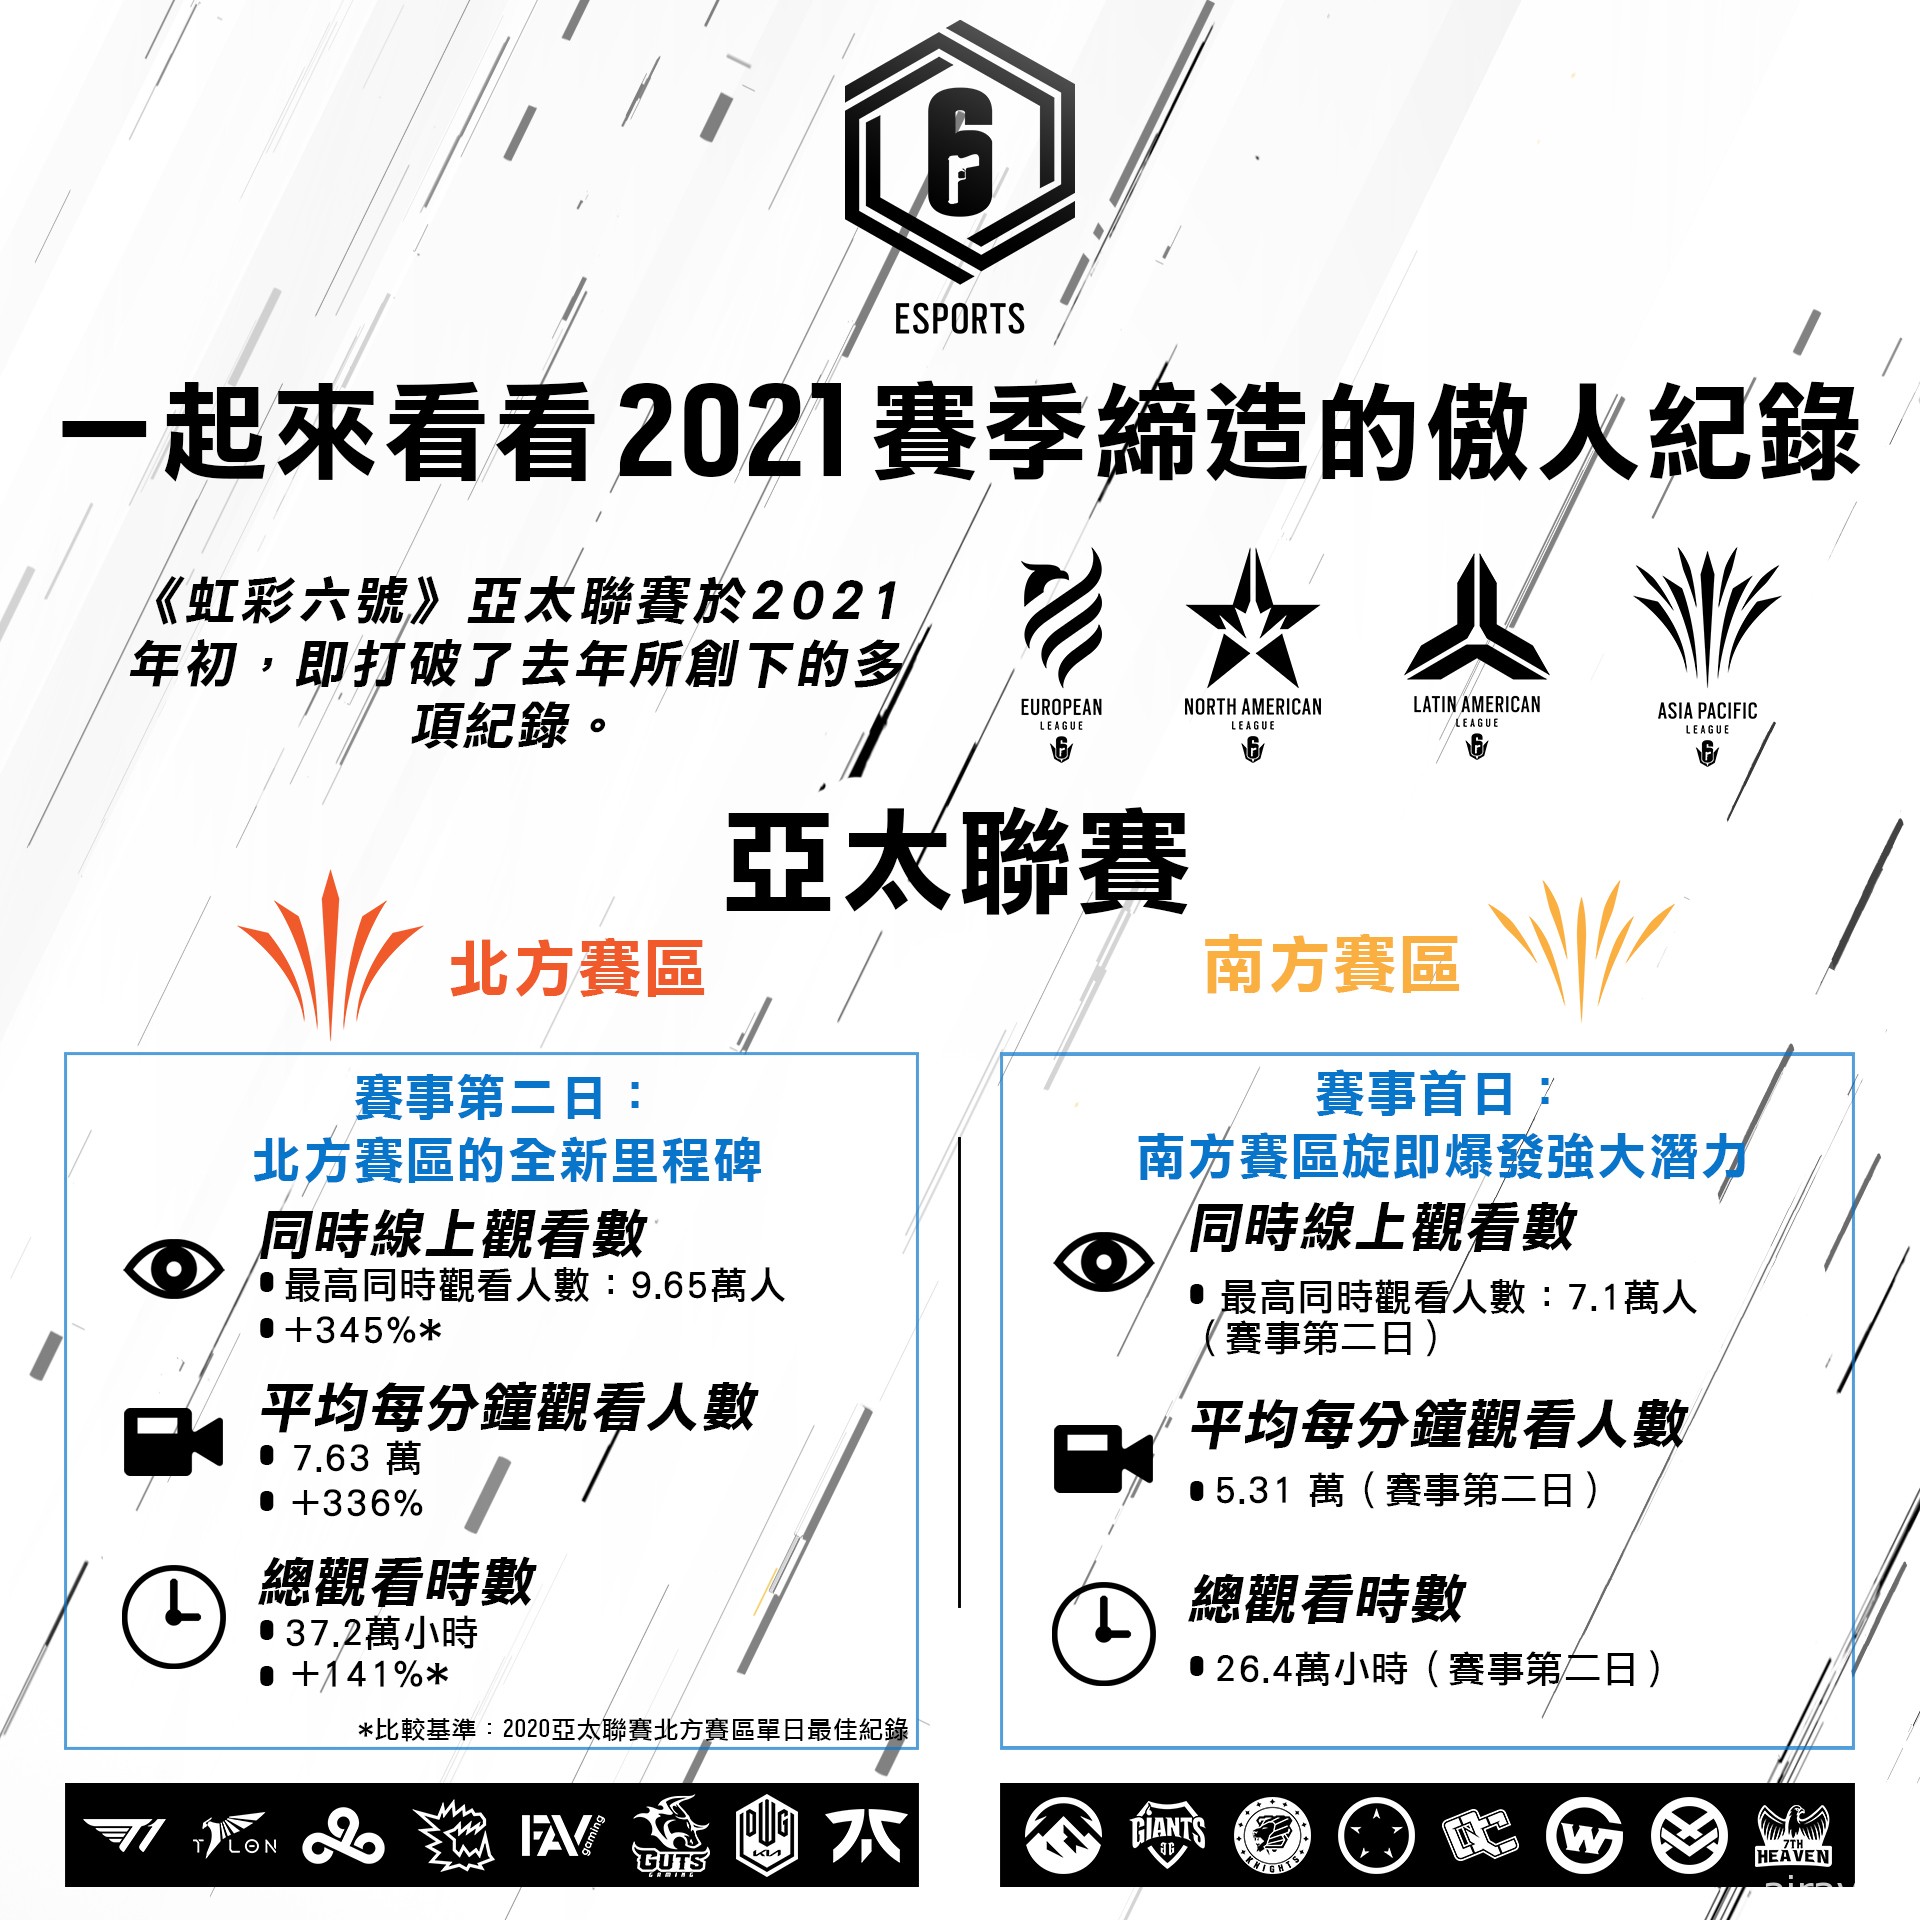 UBISOFT 宣布《虹彩六號》2021 電競賽季觀看人數突破紀錄